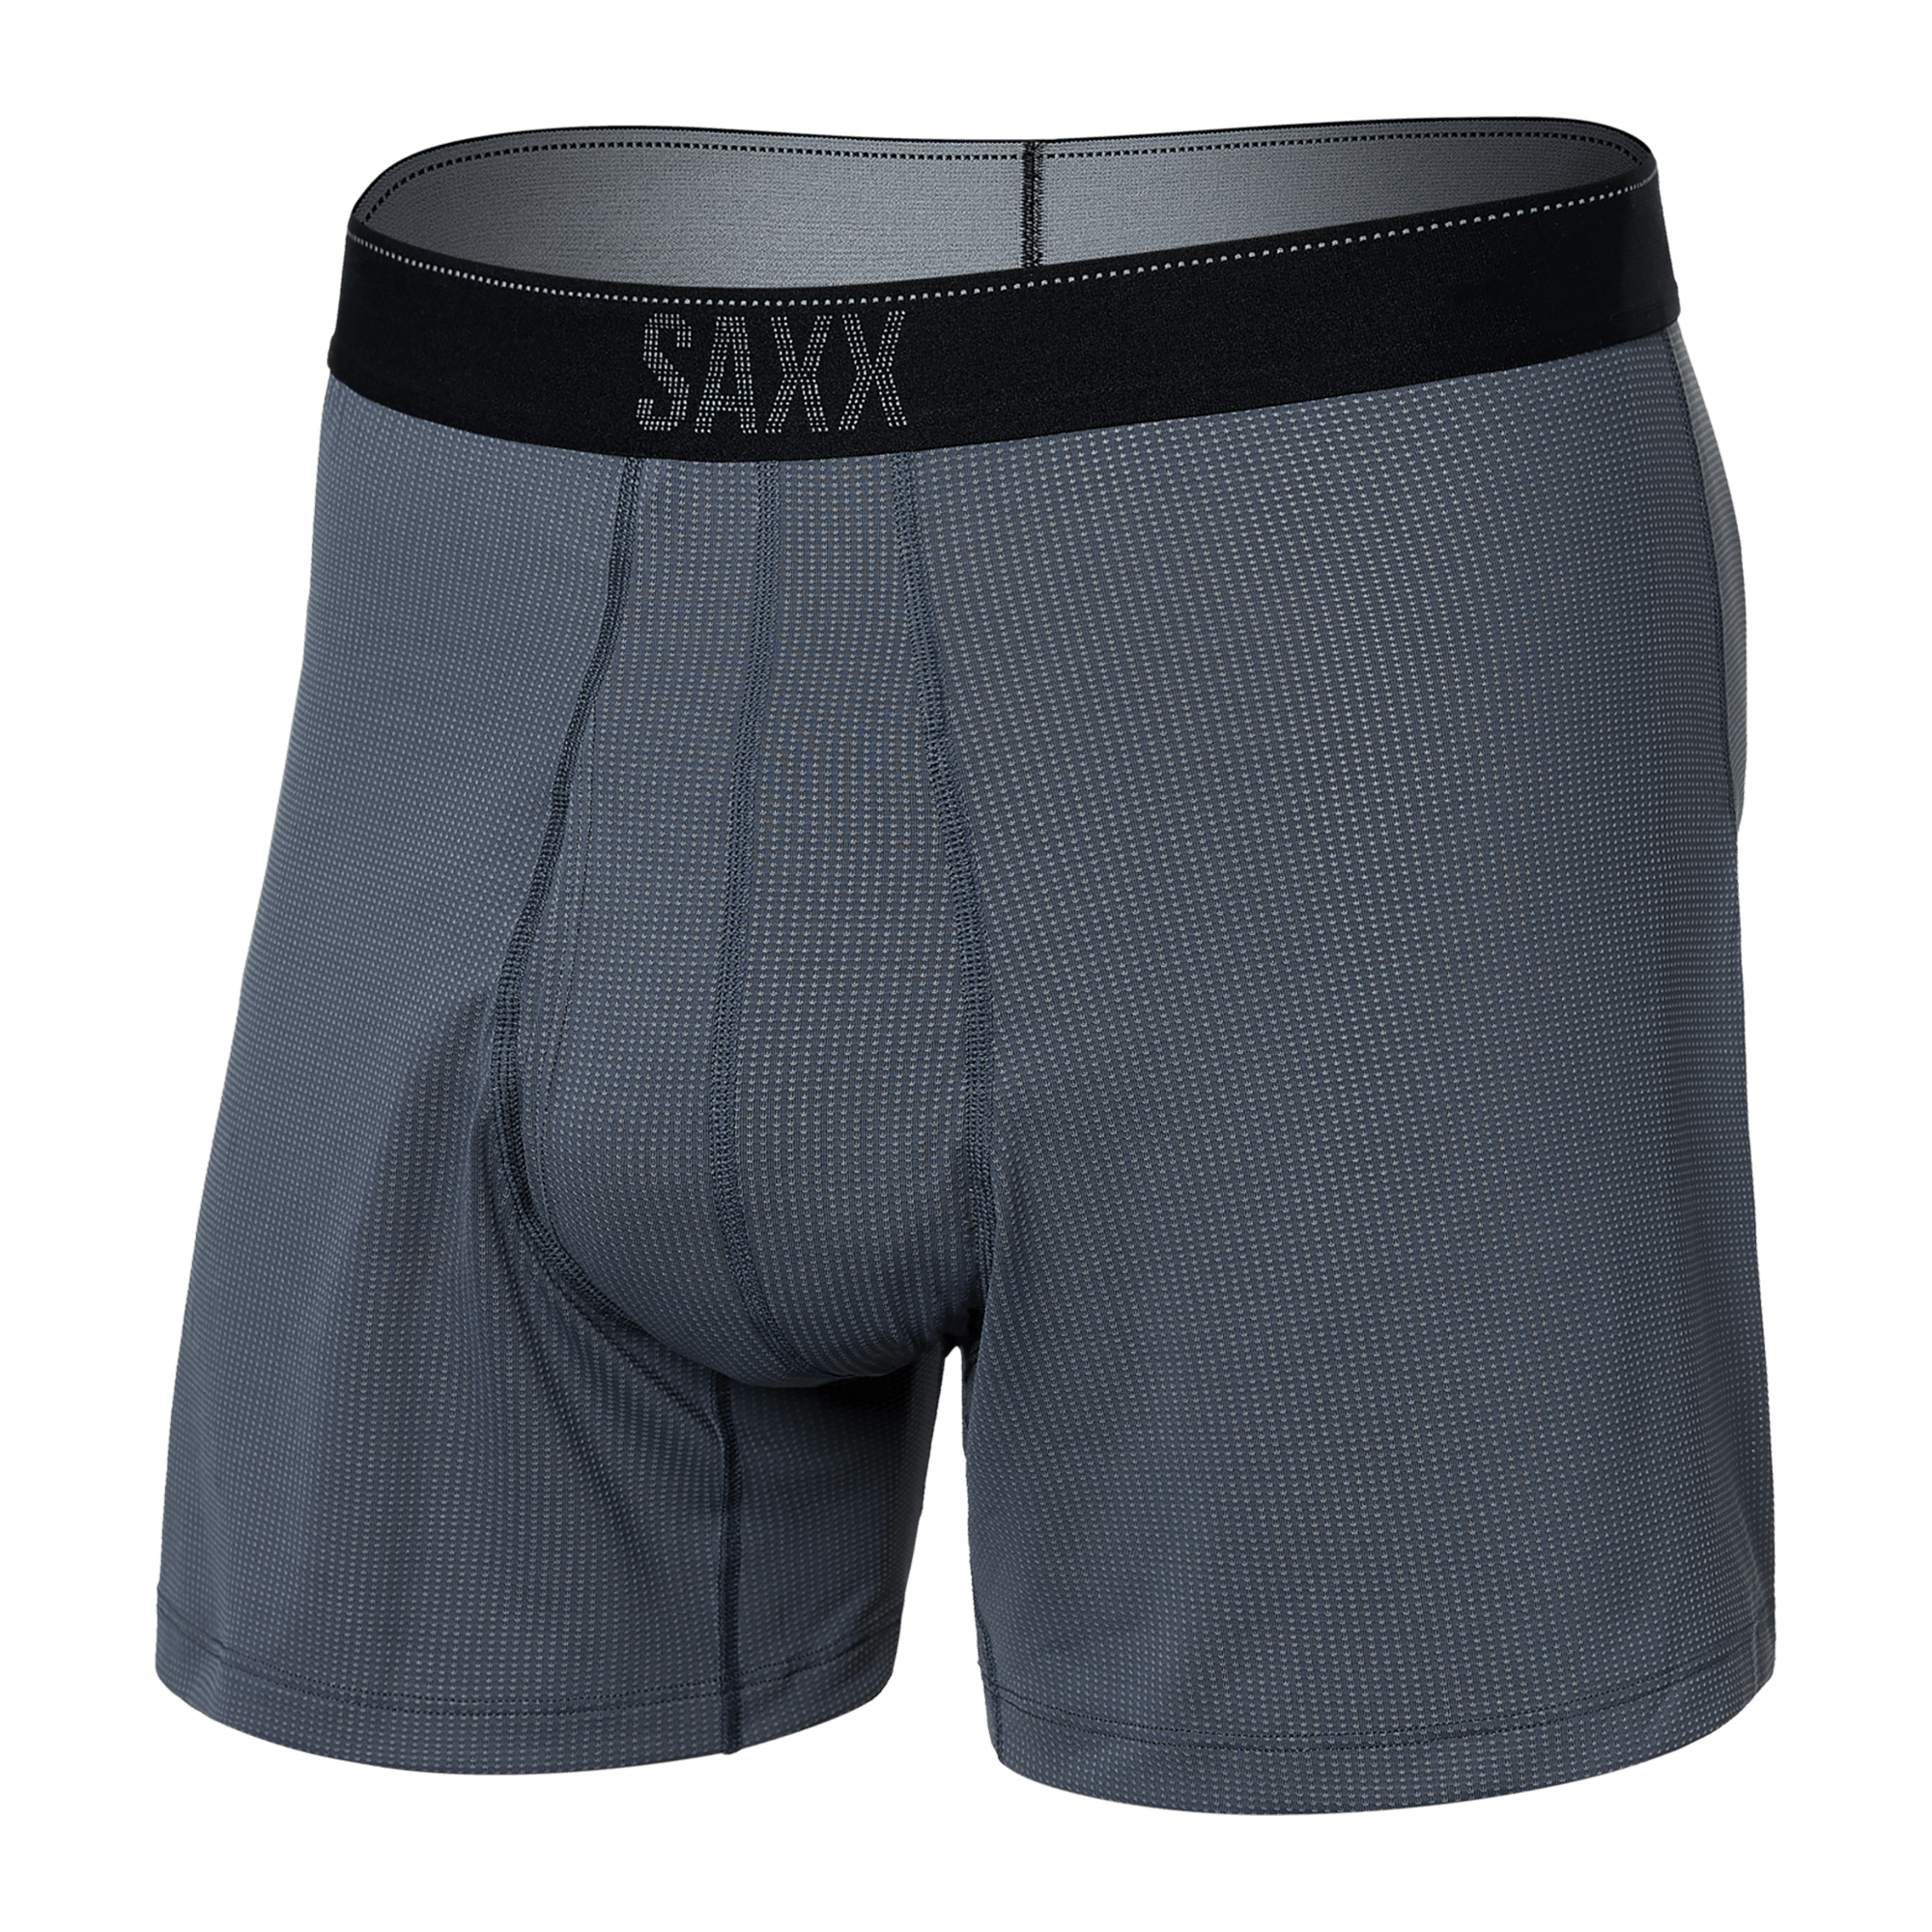 Moisture-wicking Men Underwear Men Soft Mesh Underwear Comfortable